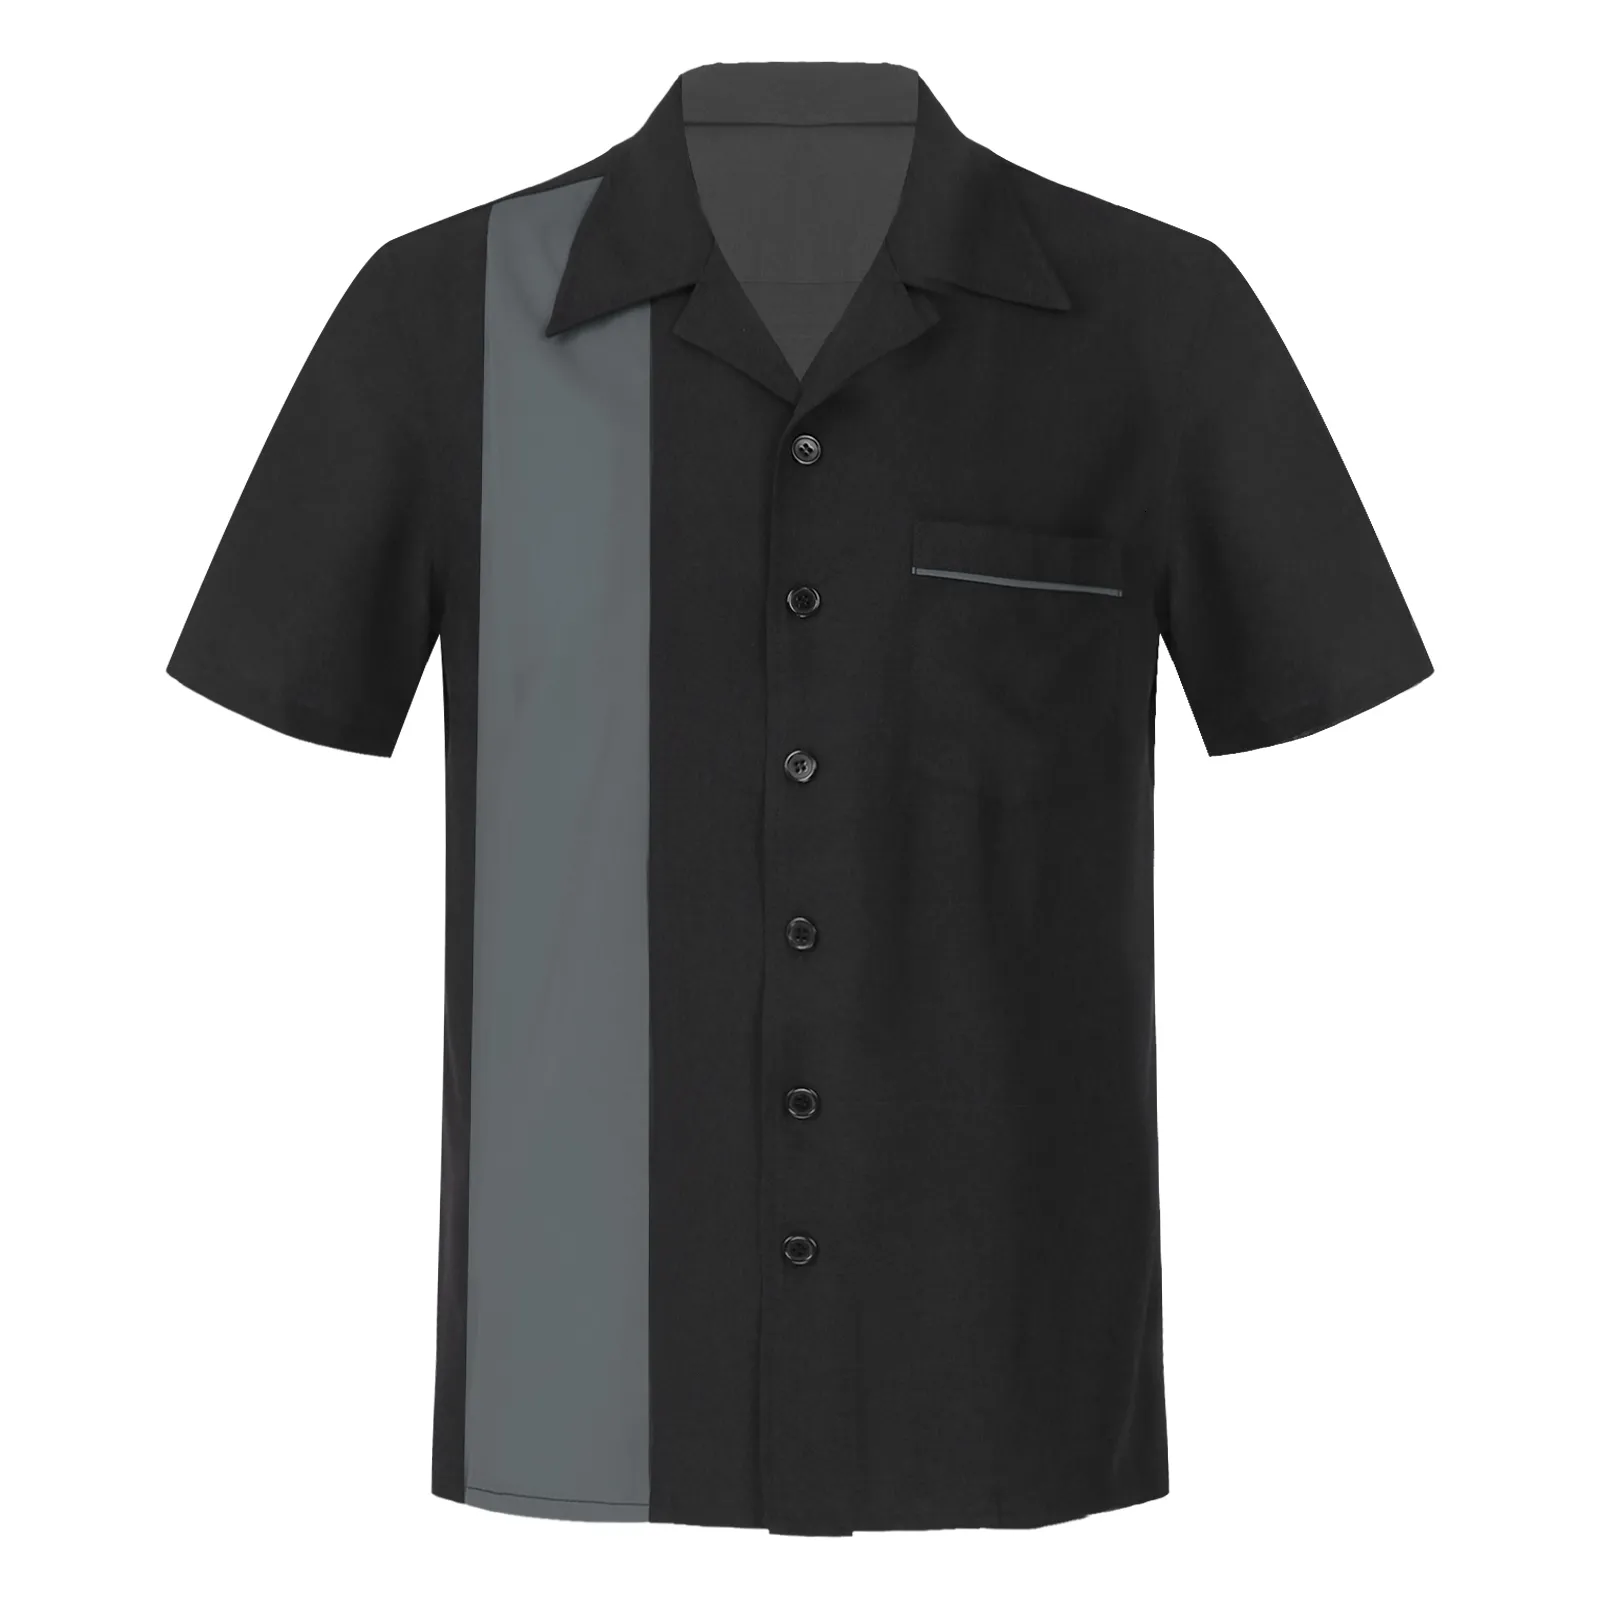 القمصان غير الرسمية للرجال رجالي قميص غير رسمي لأسفل قميص البولينج على الطراز الكوبي غير الرسمي على الأكمام القصيرة القميص القميص المعسكر للأعمال التجارية الشاطئ 230321